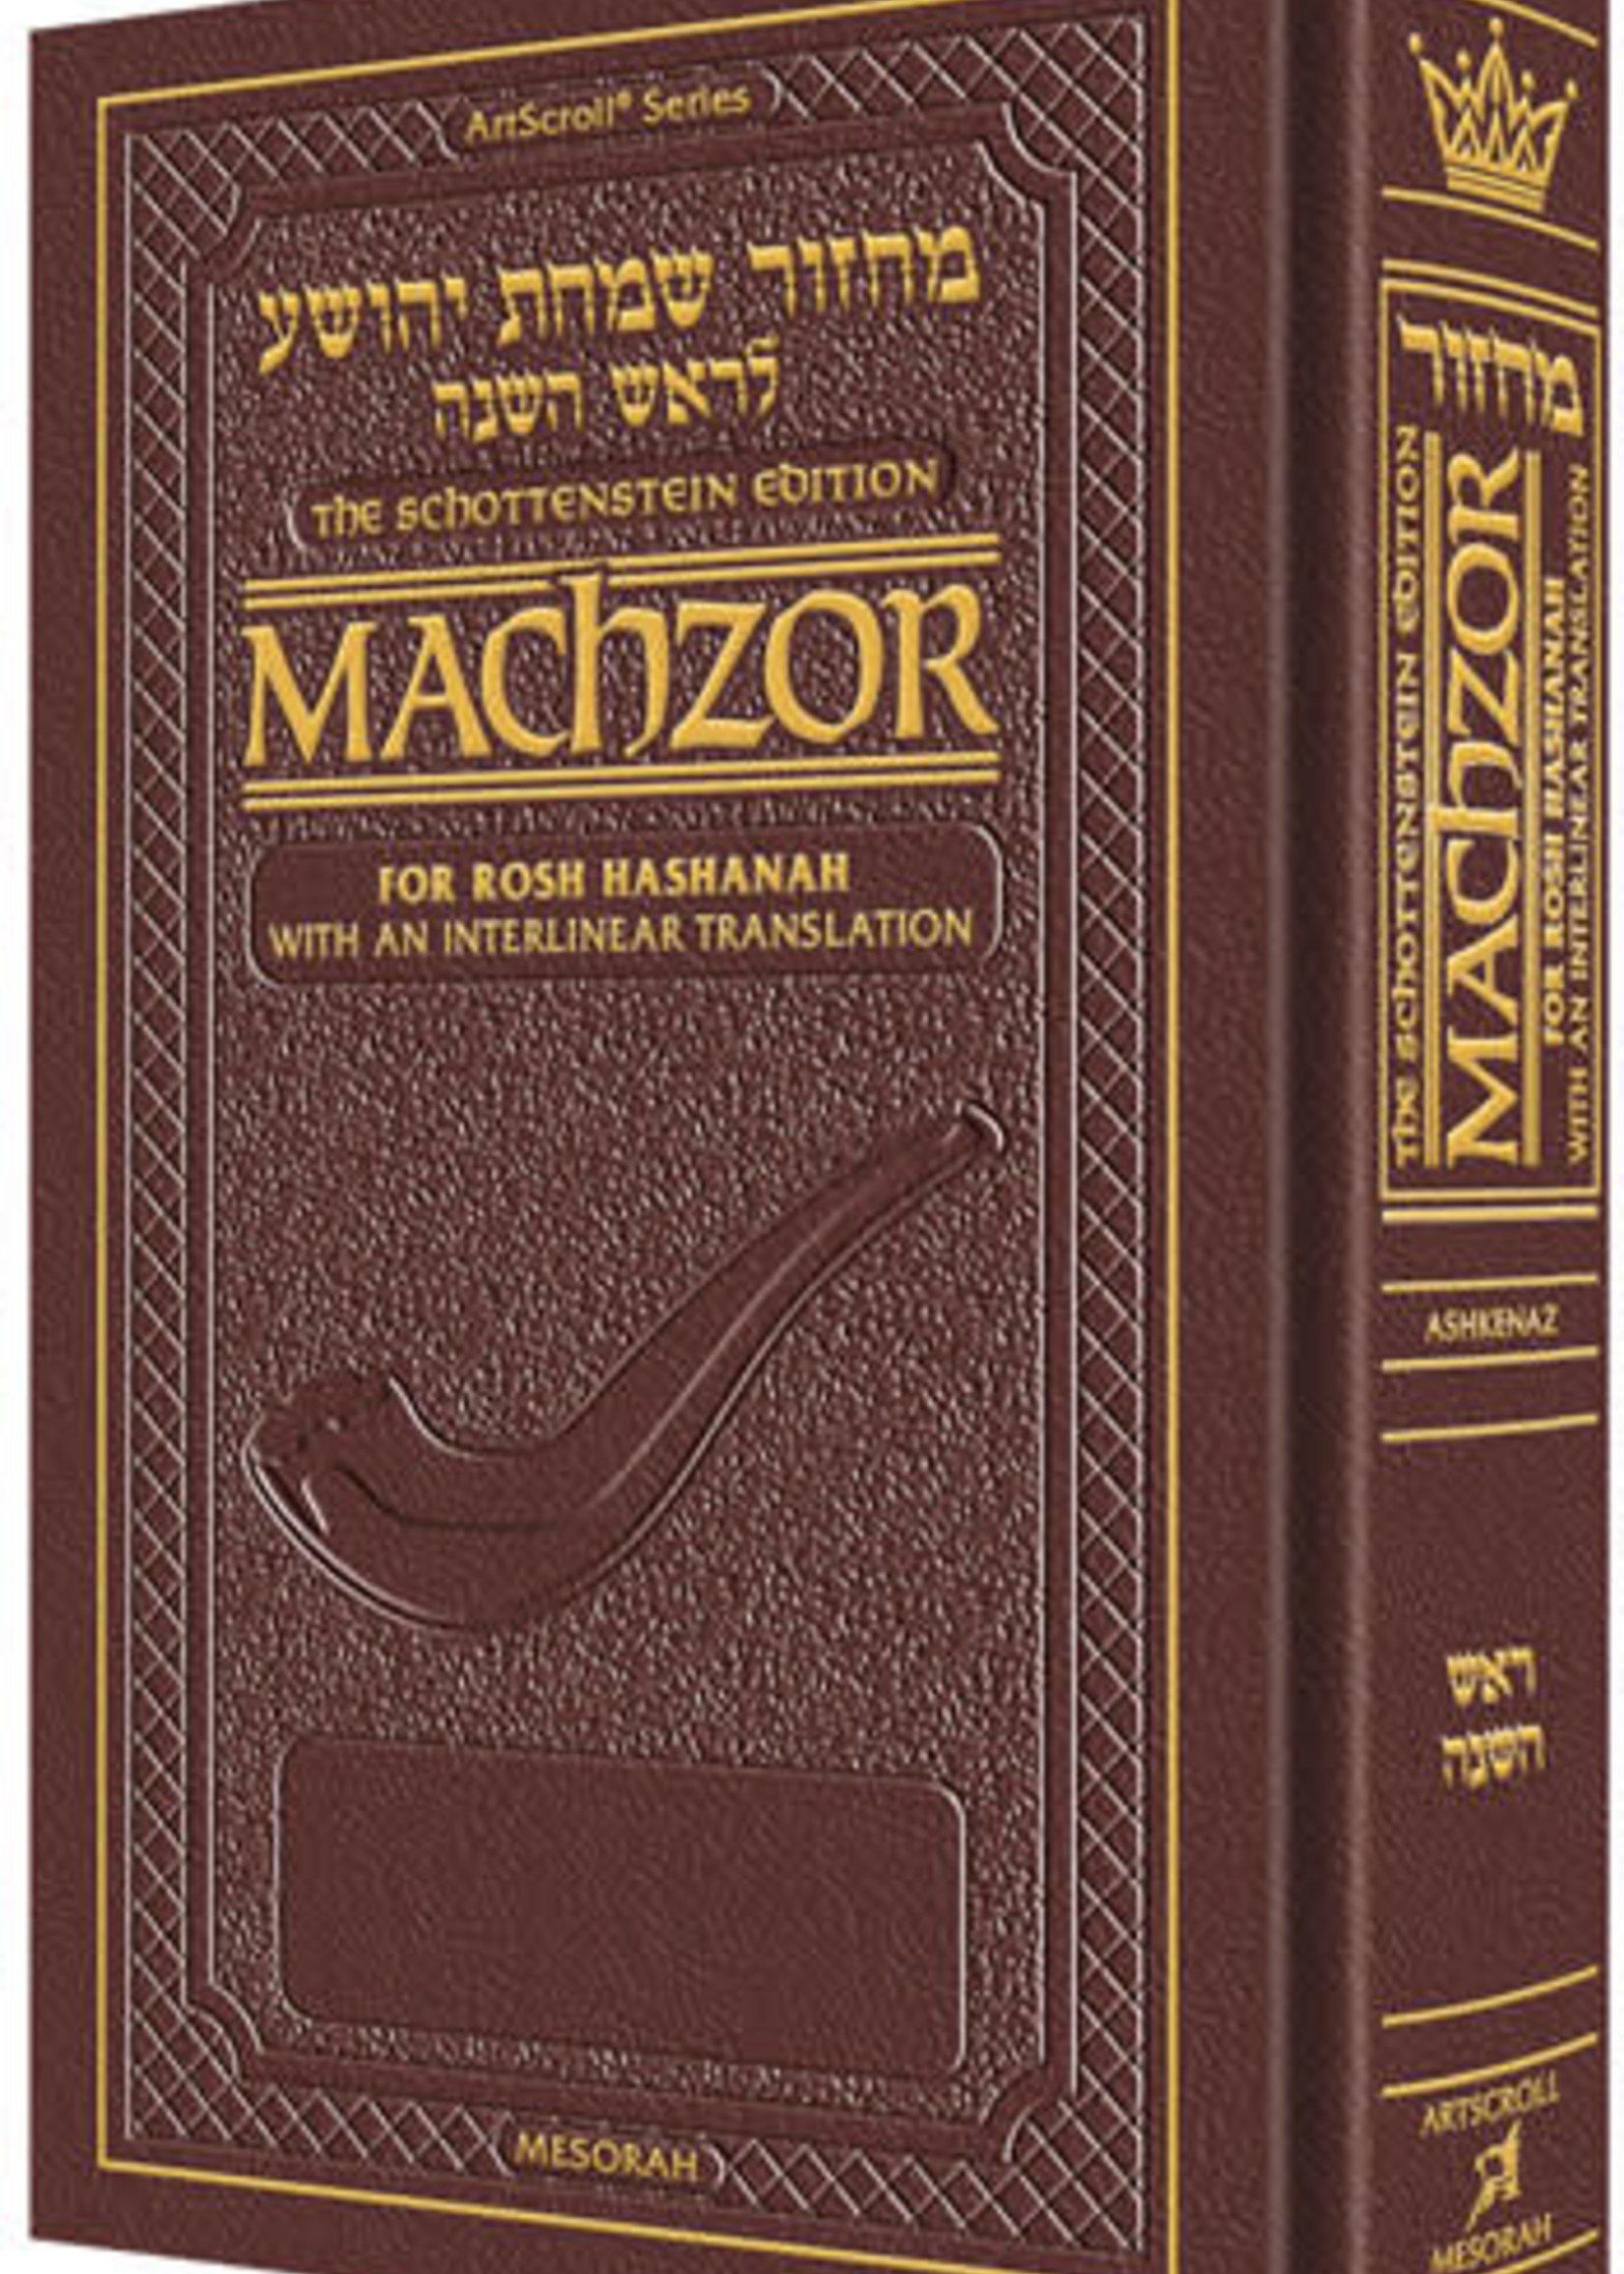 Schottenstein Ed.-Machzor for Rosh HaShanah/Interlinear Trans. [Ashkenaz]/